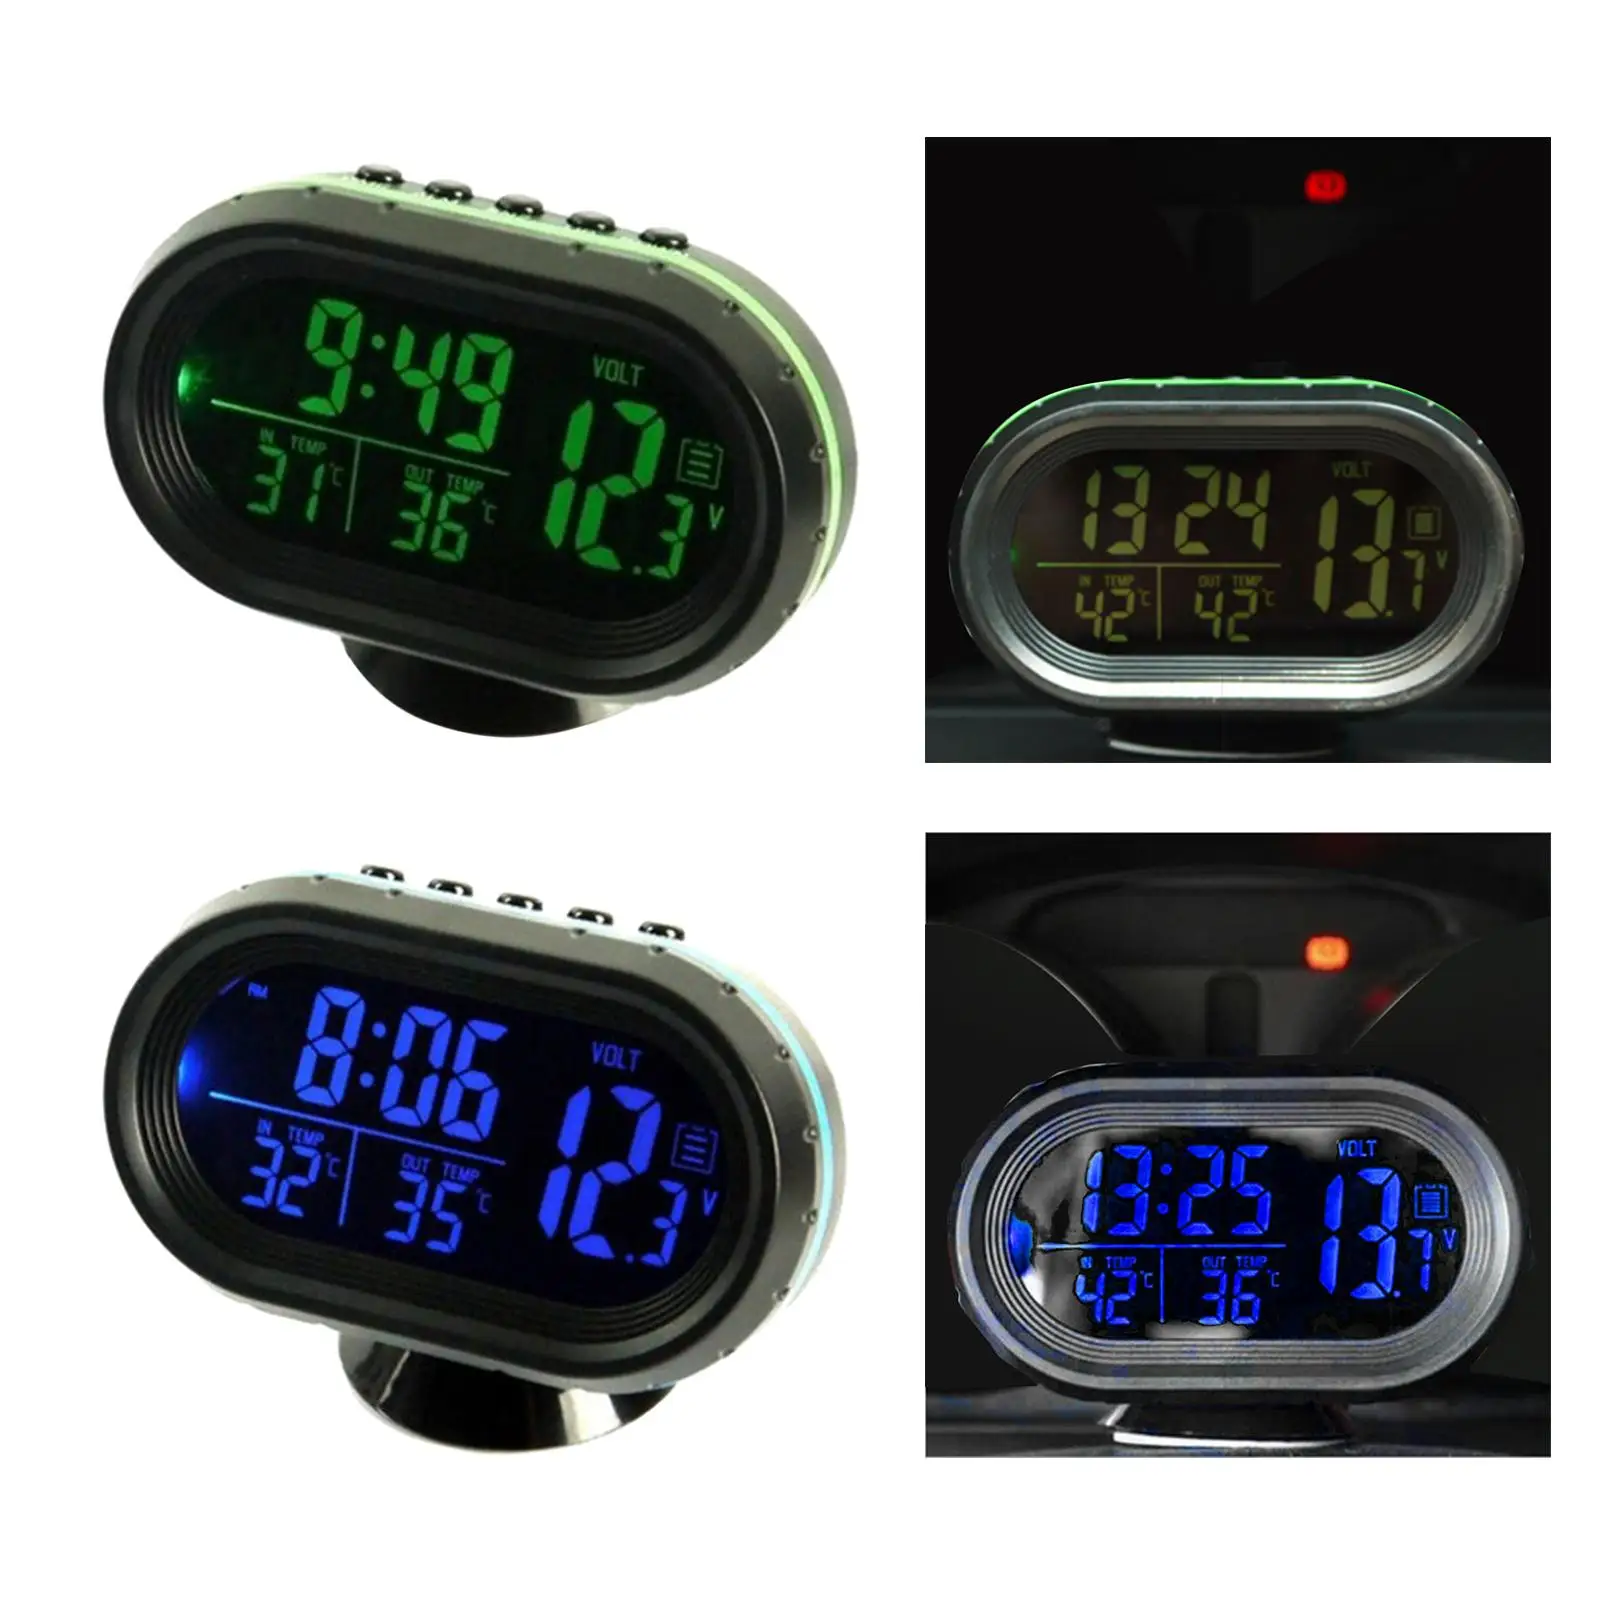 Thermometer Clock Voltmeter Battery Meter Dual Temperature Gauge Alarm Monitor